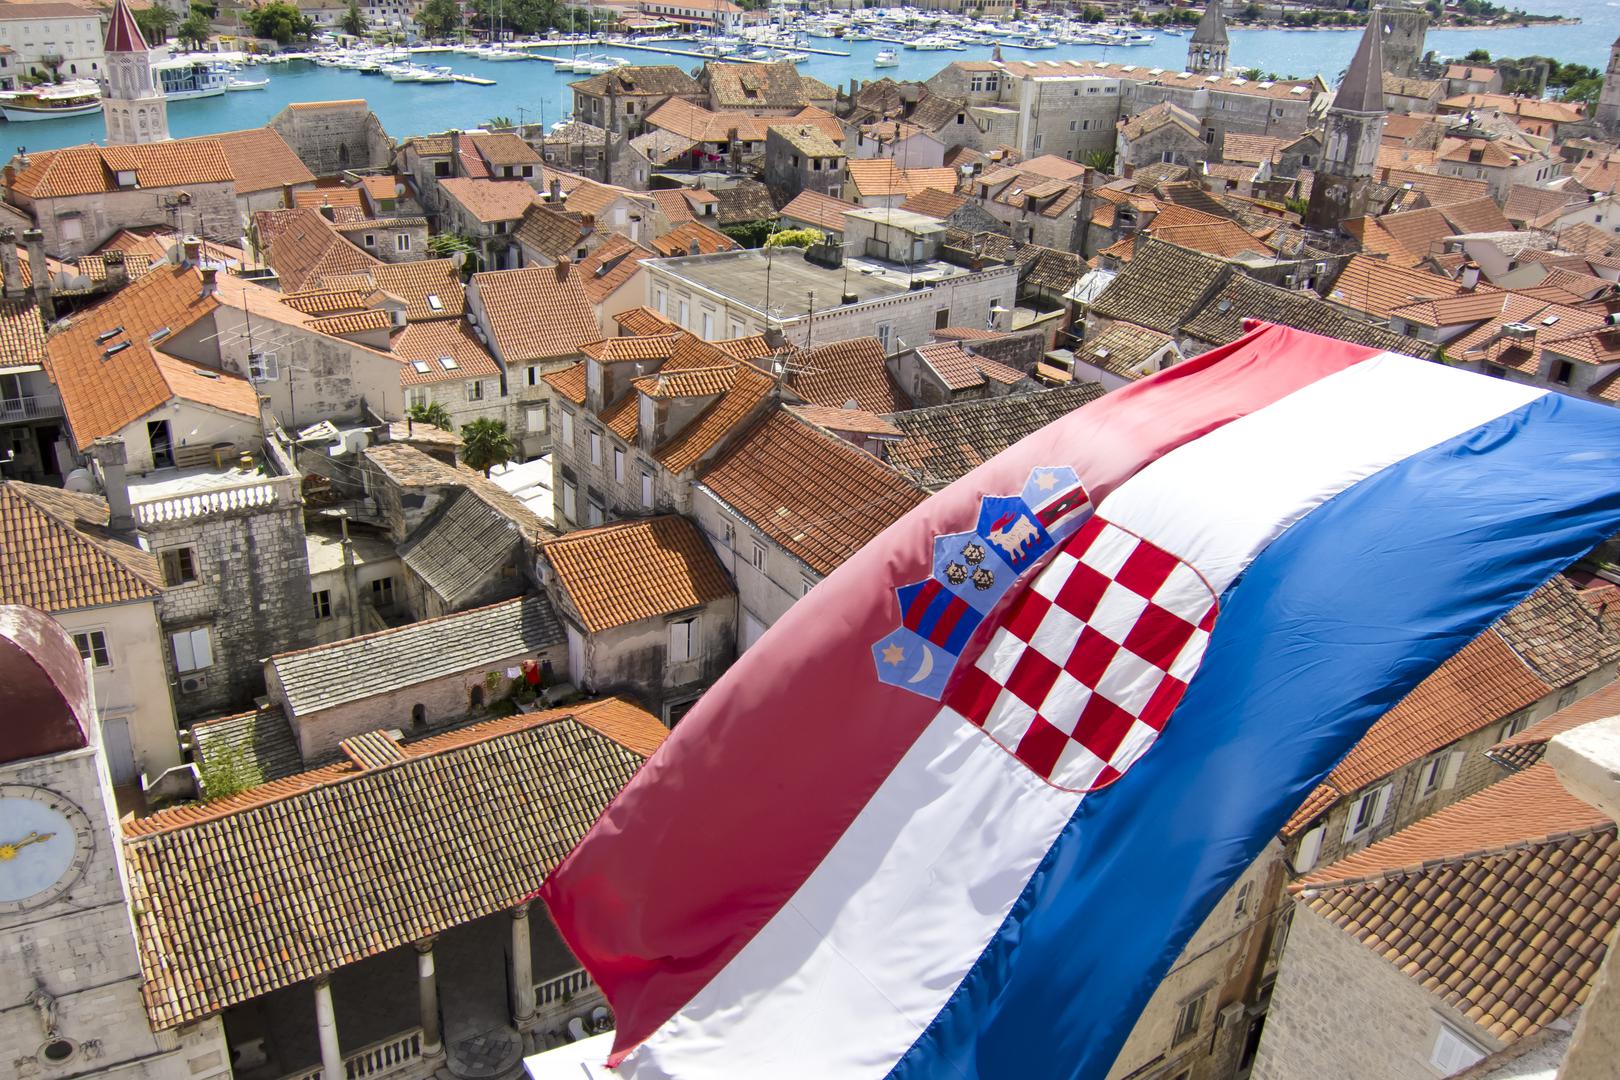 Svjetski poznati portal The Travel Bible objavio je 20 činjenica koji rijetki znaju o Hrvatskoj. I, dok je za strance i turiste to sasvim normalno, nas zanima jeste li vi znali sve ovo o Lijepoj Našoj. Također, u komentarima su mnogi izrazili oduševljenje našom zemljom, obalom i nogometnom reprezentacijom! 